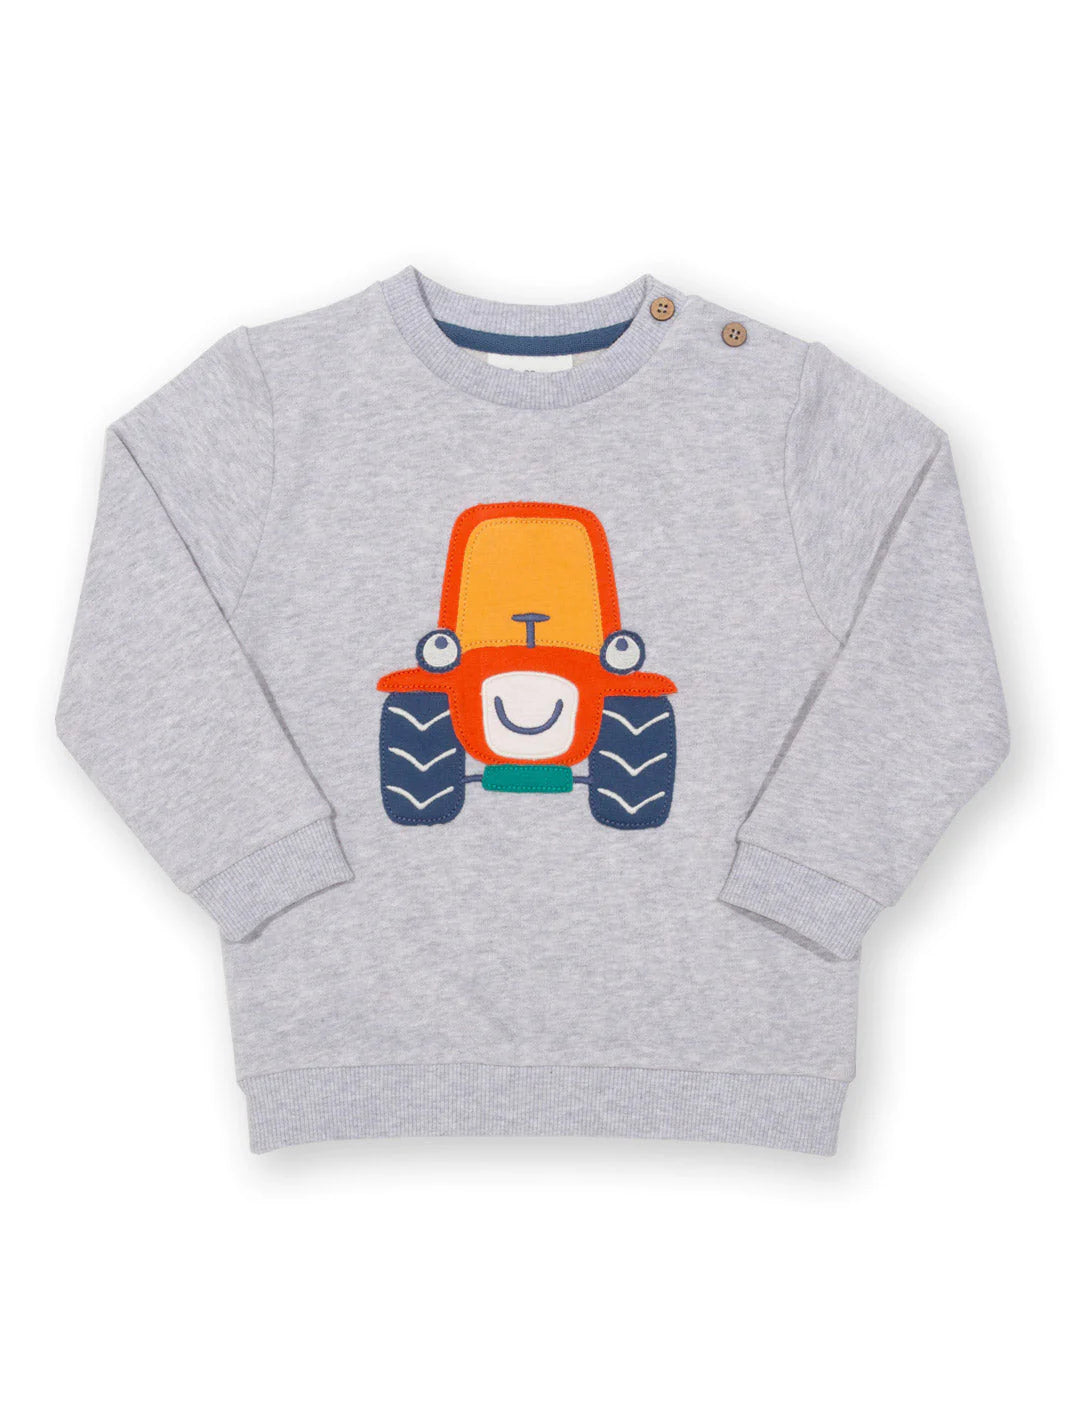 Happy Tractor Sweatshirt